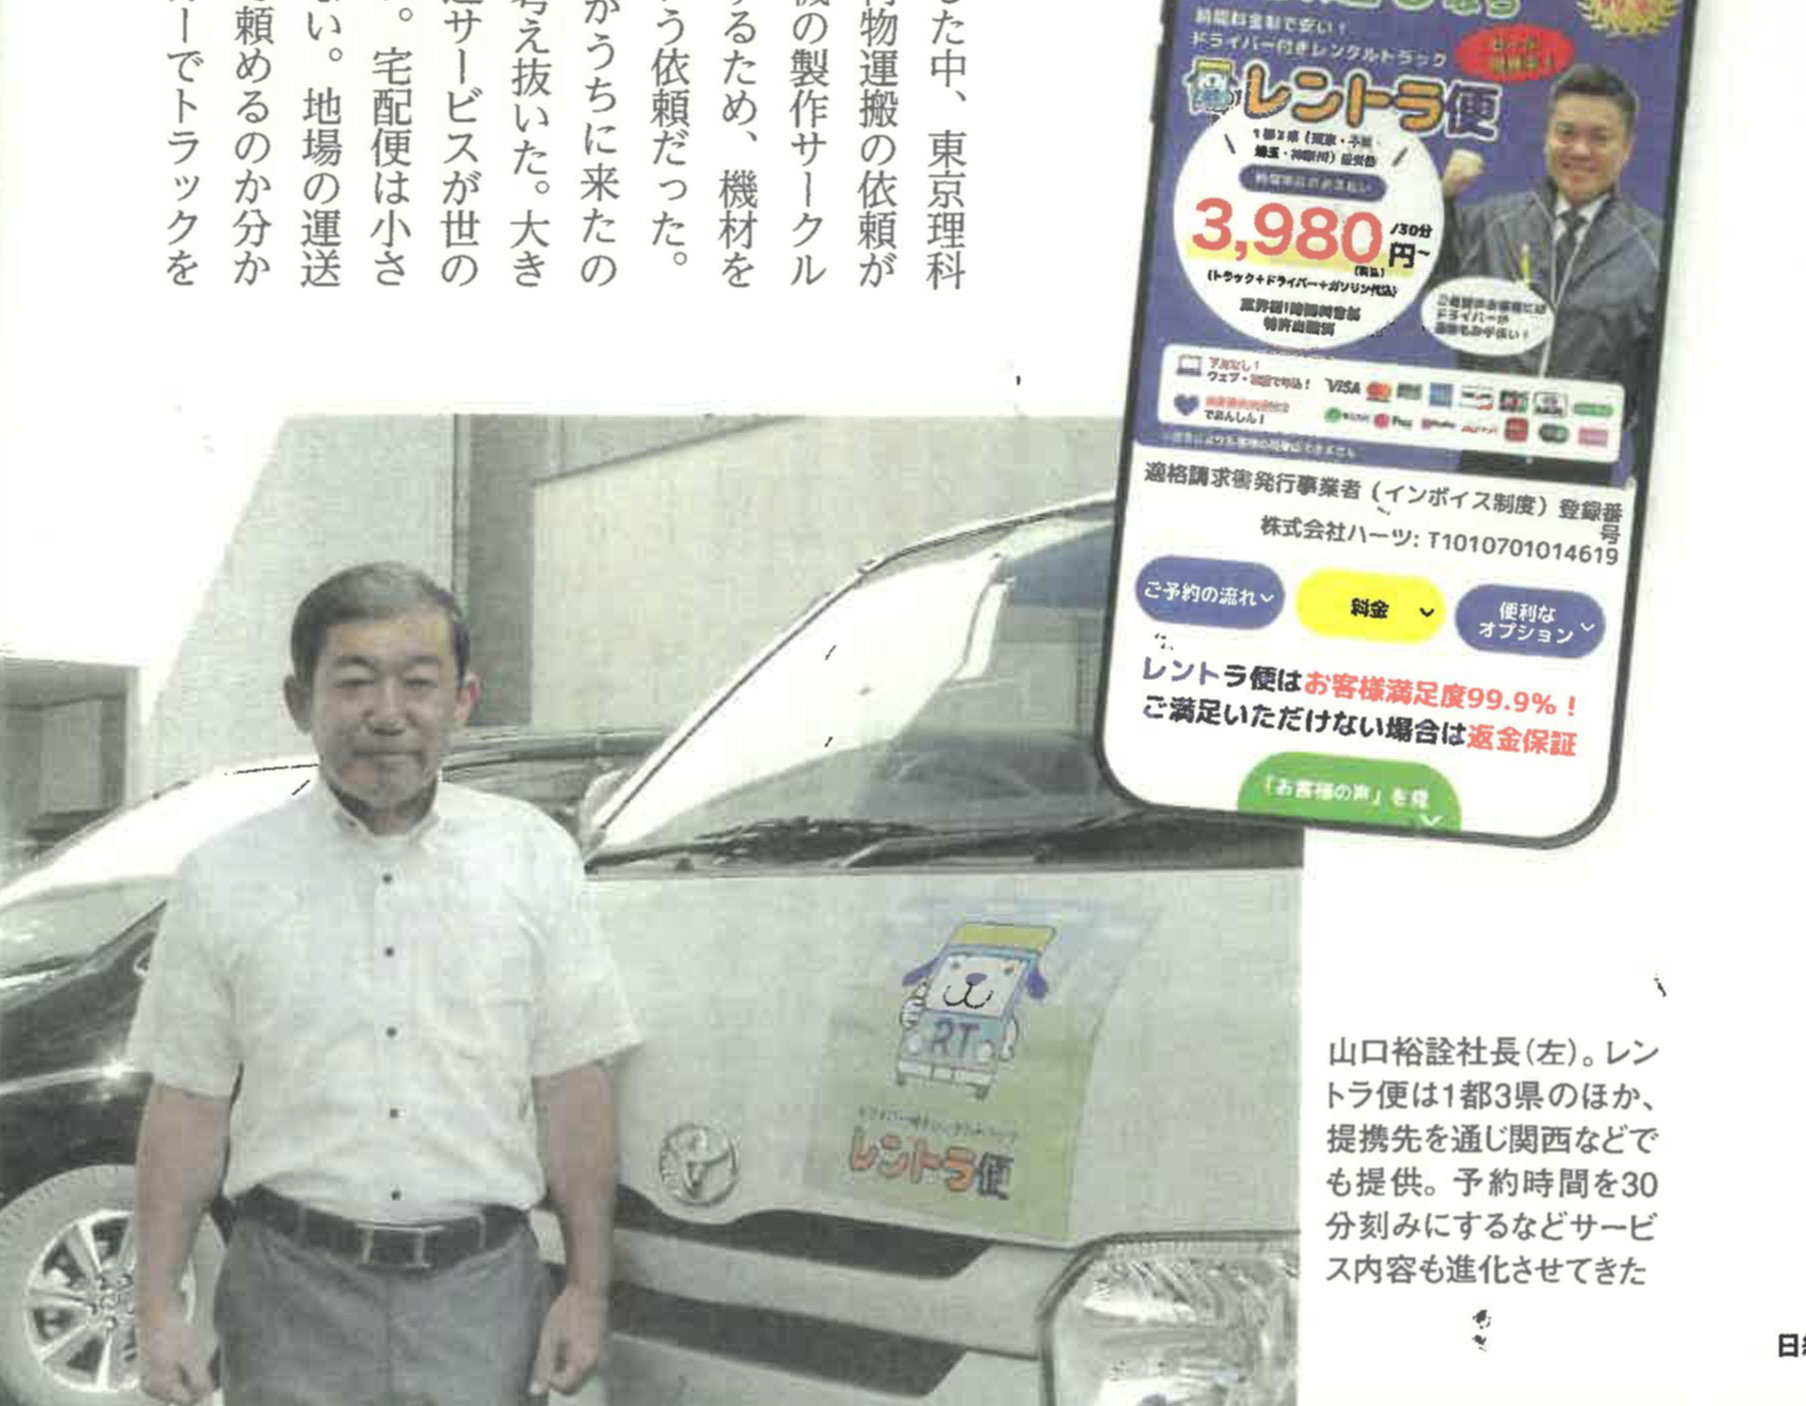 レントラ便が「日経トップリーダー」に掲載されました。